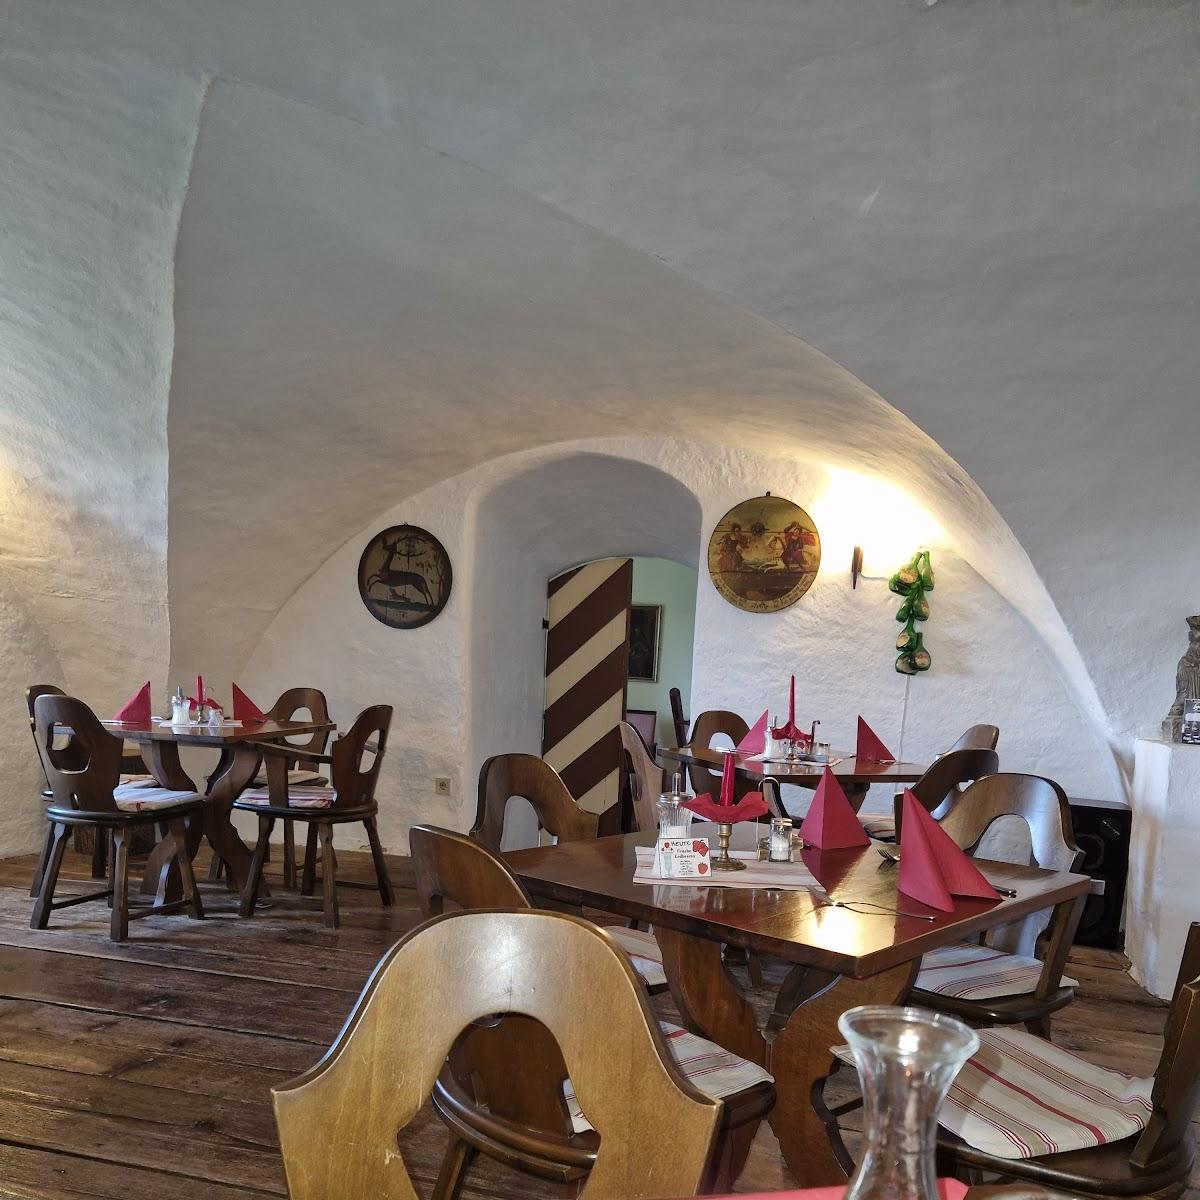 Restaurant "Gaststätte Schloss" in Issigau